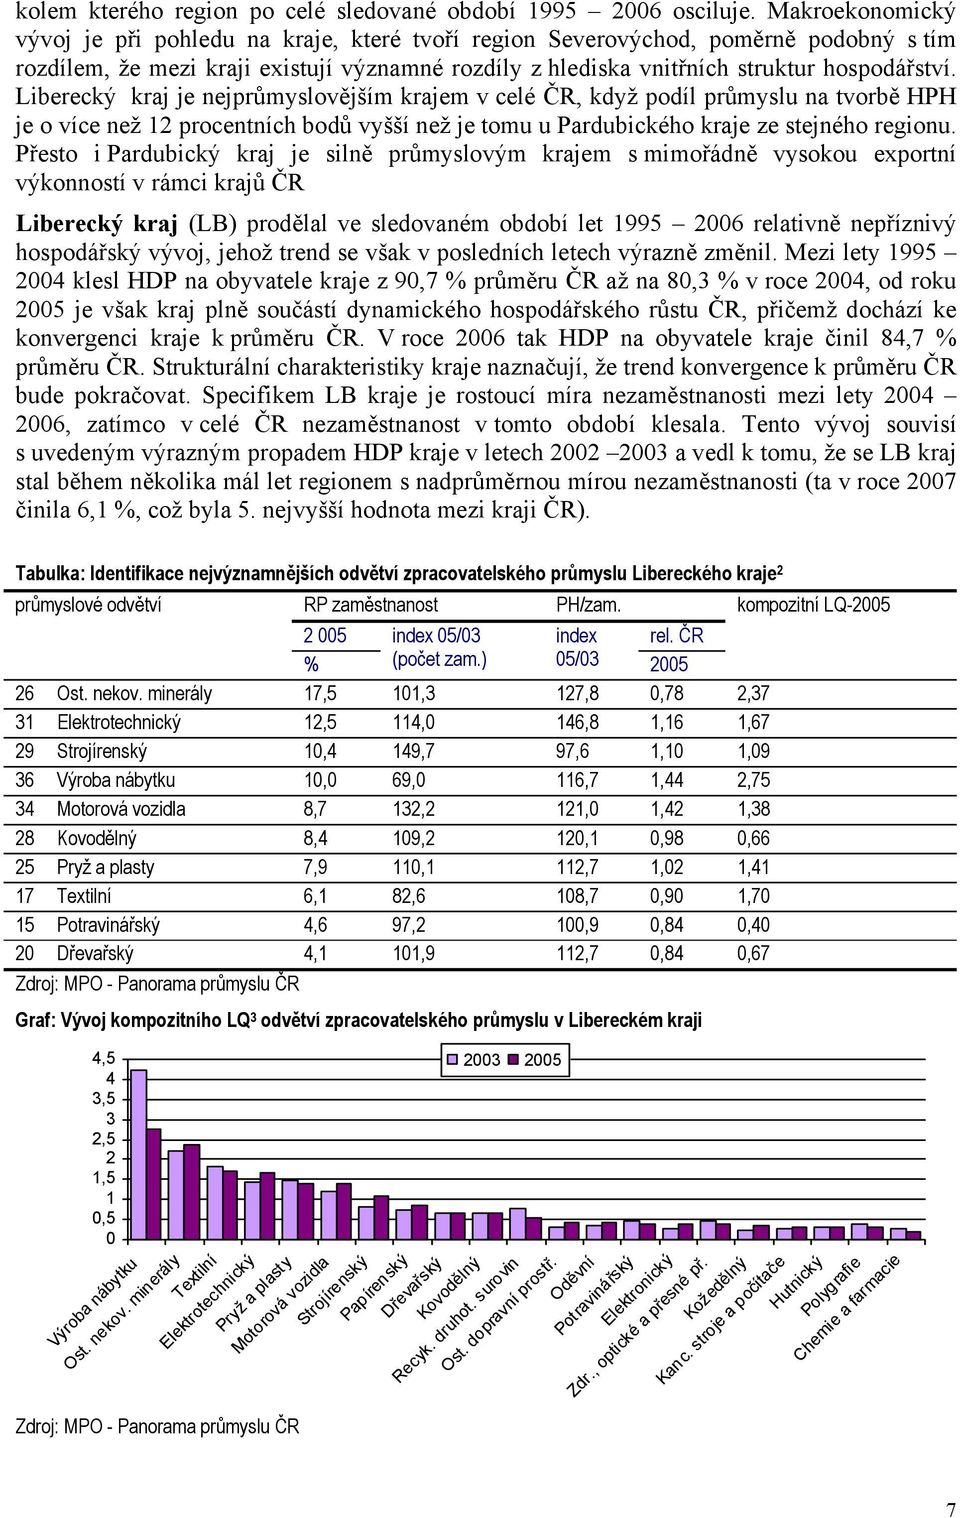 Liberecký kraj je nejprůmyslovějším krajem v celé ČR, když podíl průmyslu na tvorbě HPH je o více než 12 procentních bodů vyšší než je tomu u Pardubického kraje ze stejného regionu.